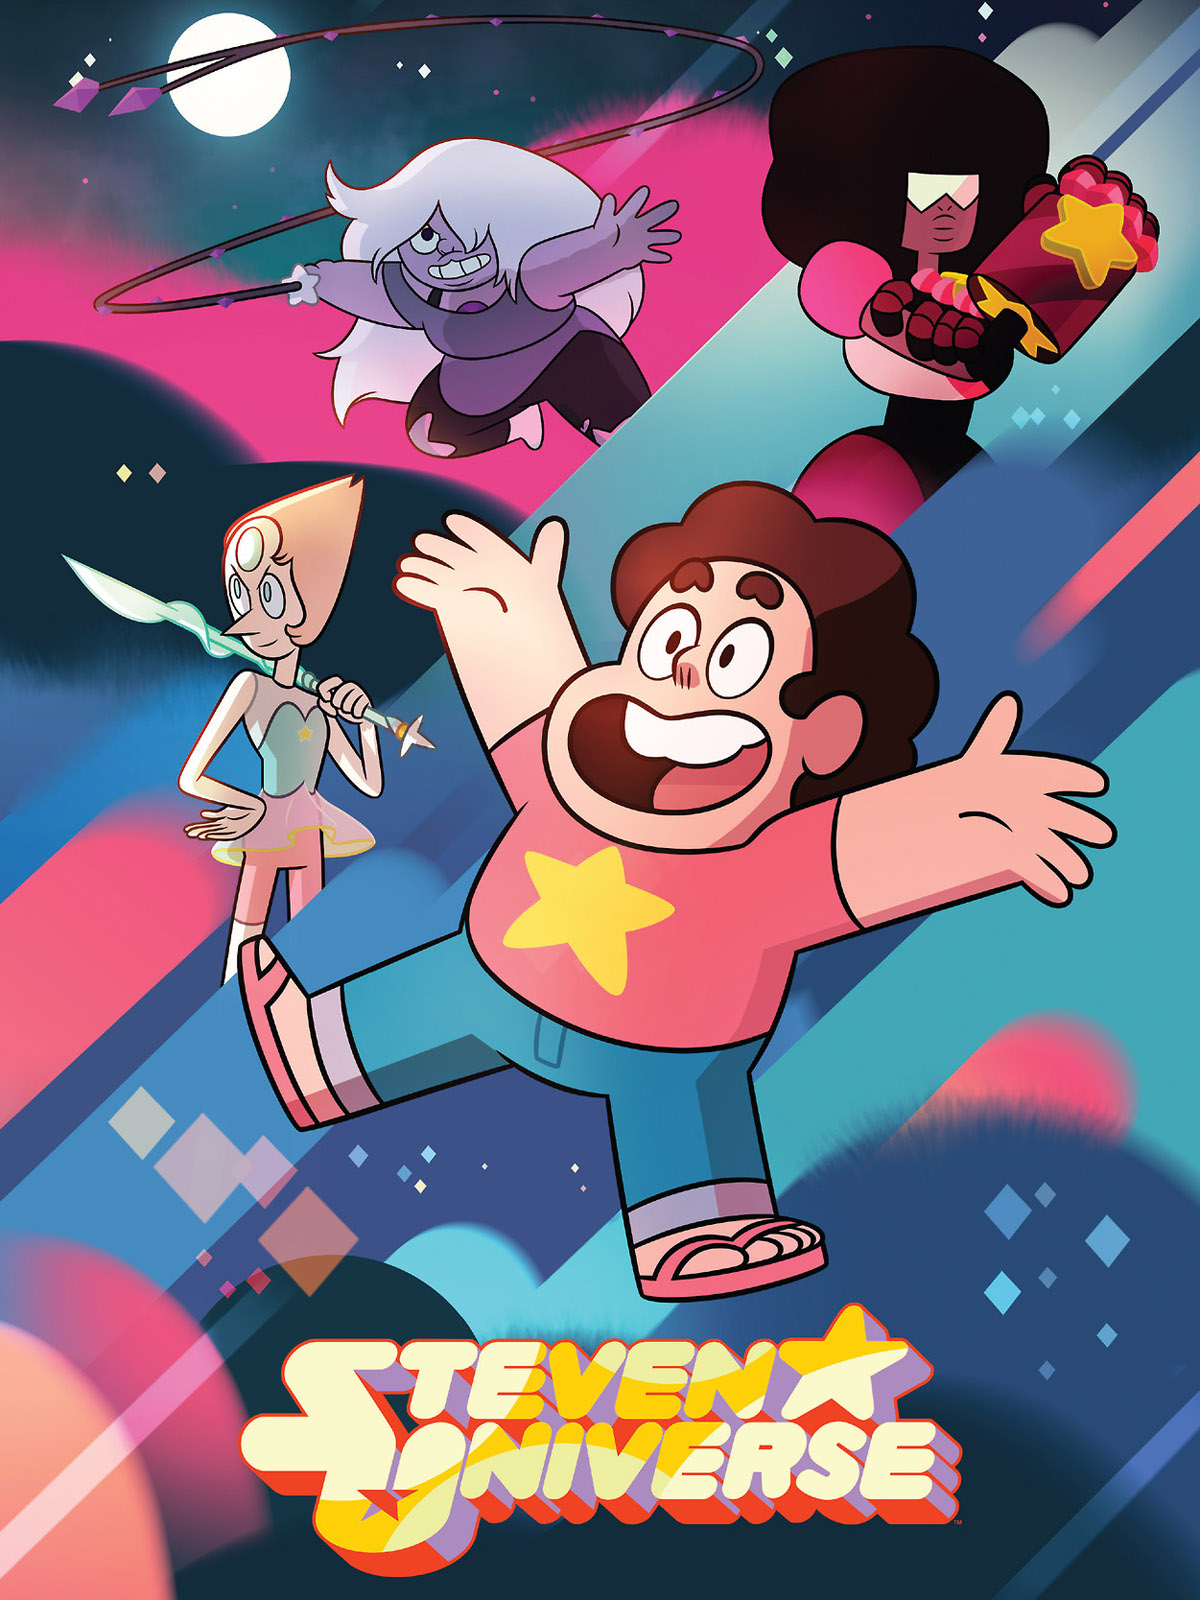 Steven Universe Life - Hora de escolher o personagem mais superestimado de Steven  Universe! 😂